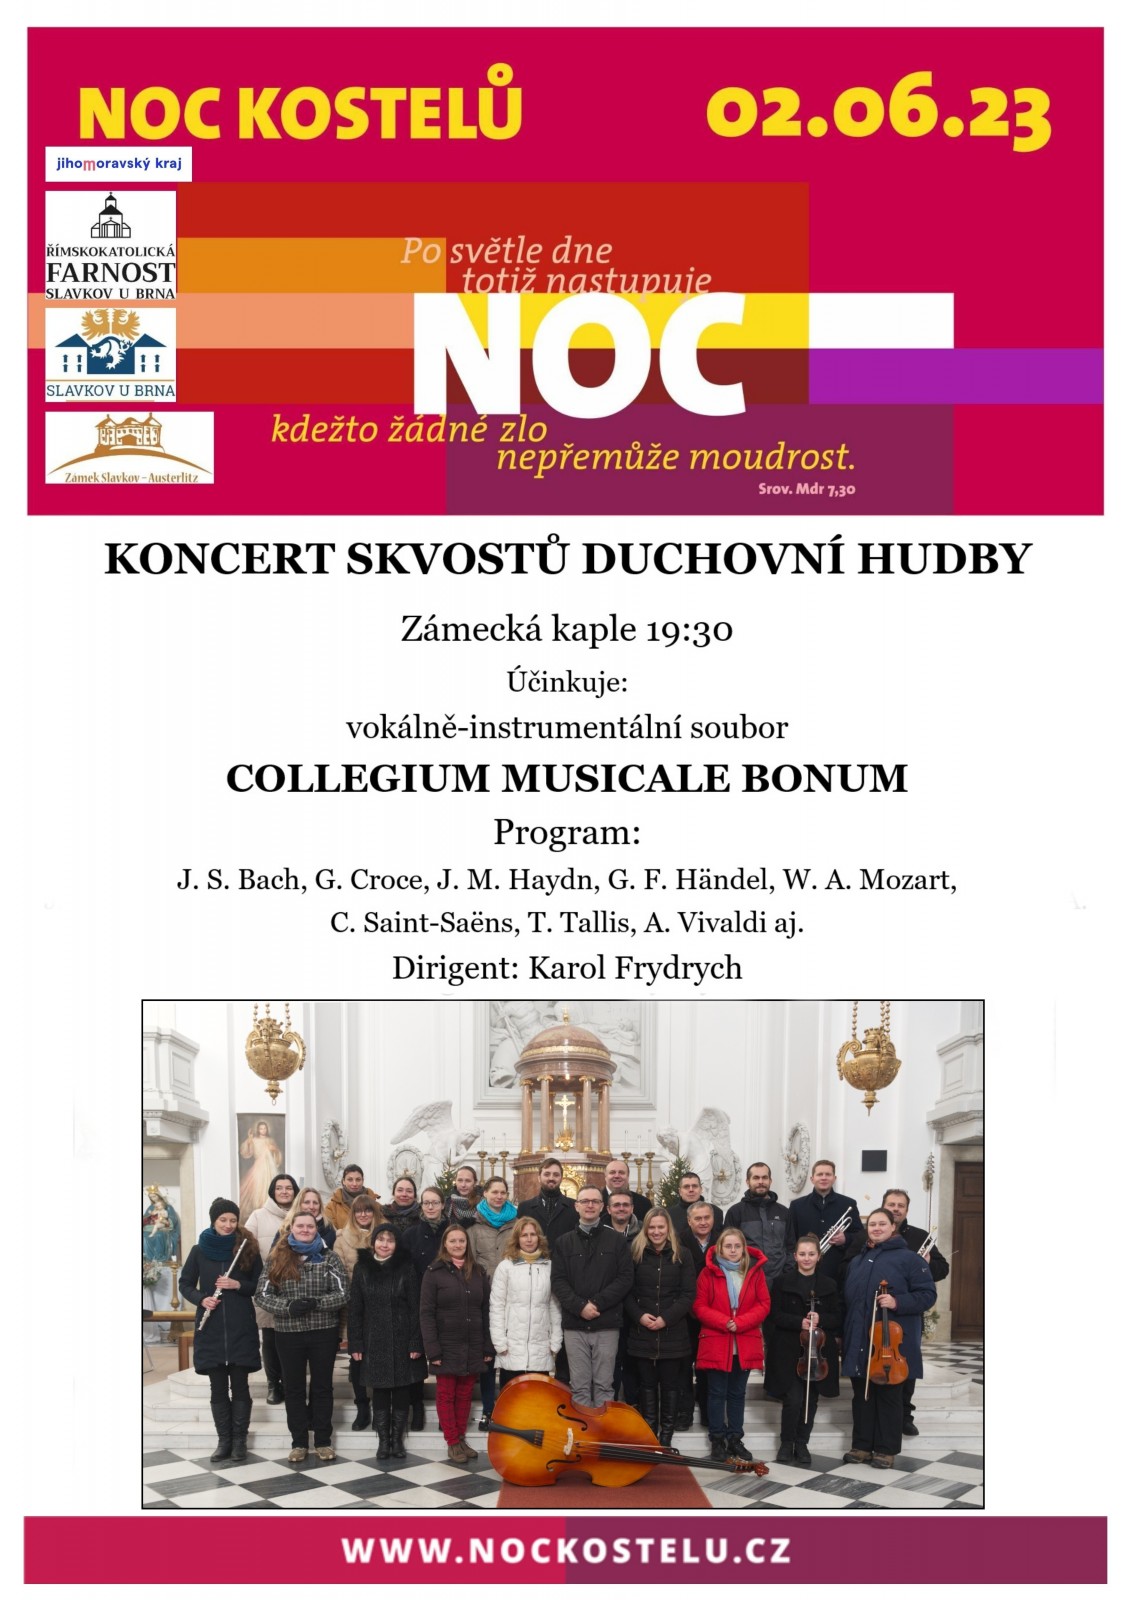 Koncert Collegium musicale bonum - Noc kostelů